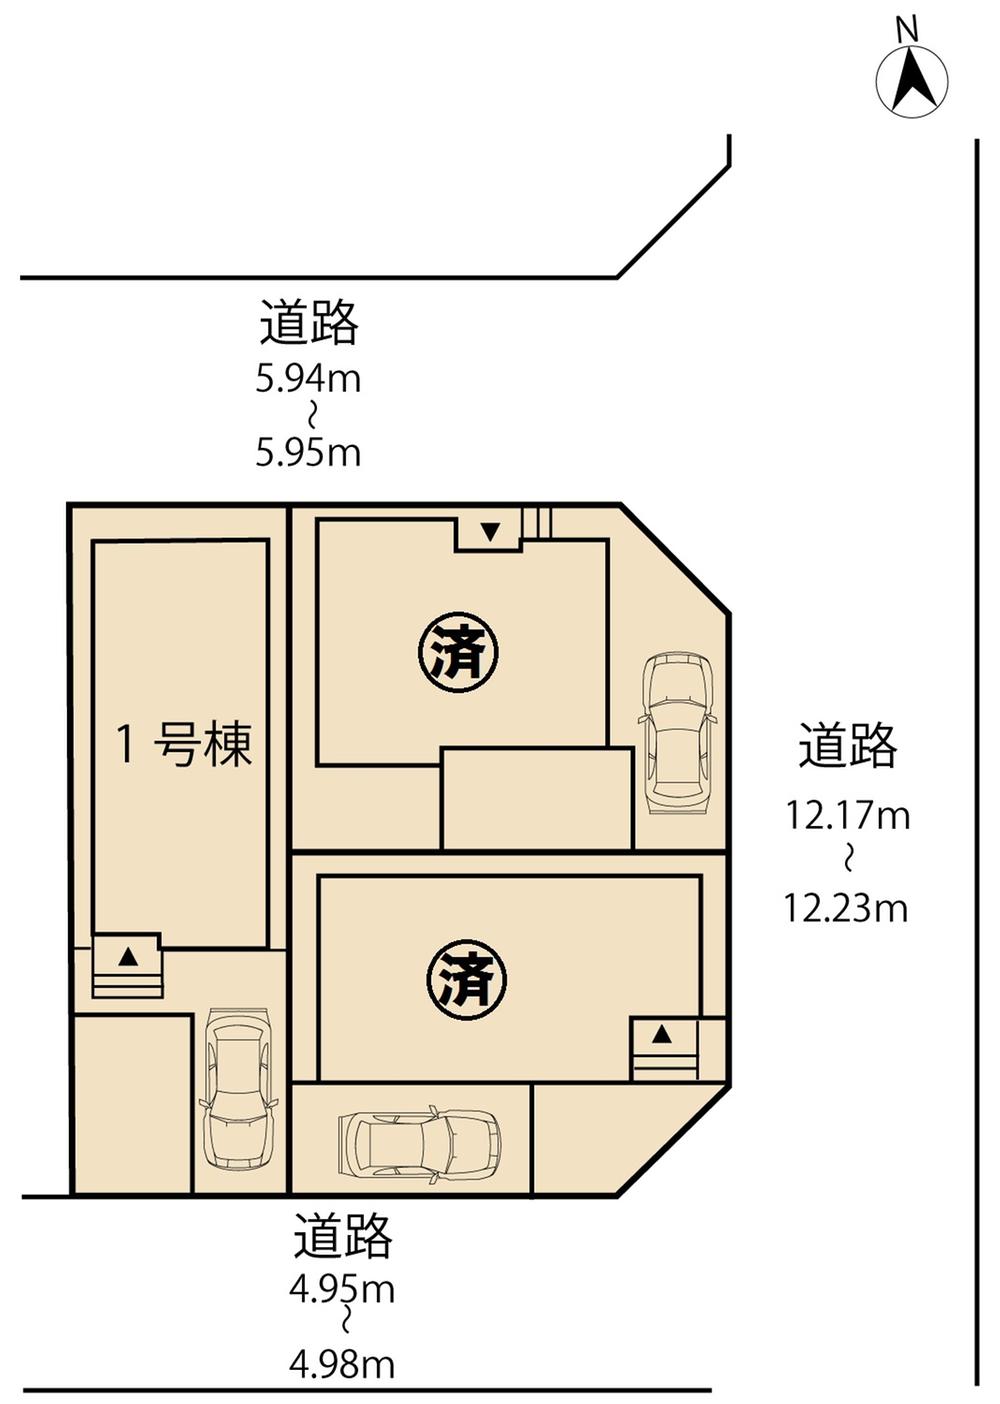 Compartment figure. 25,800,000 yen, 4LDK, Land area 102.83 sq m , Building area 95.58 sq m